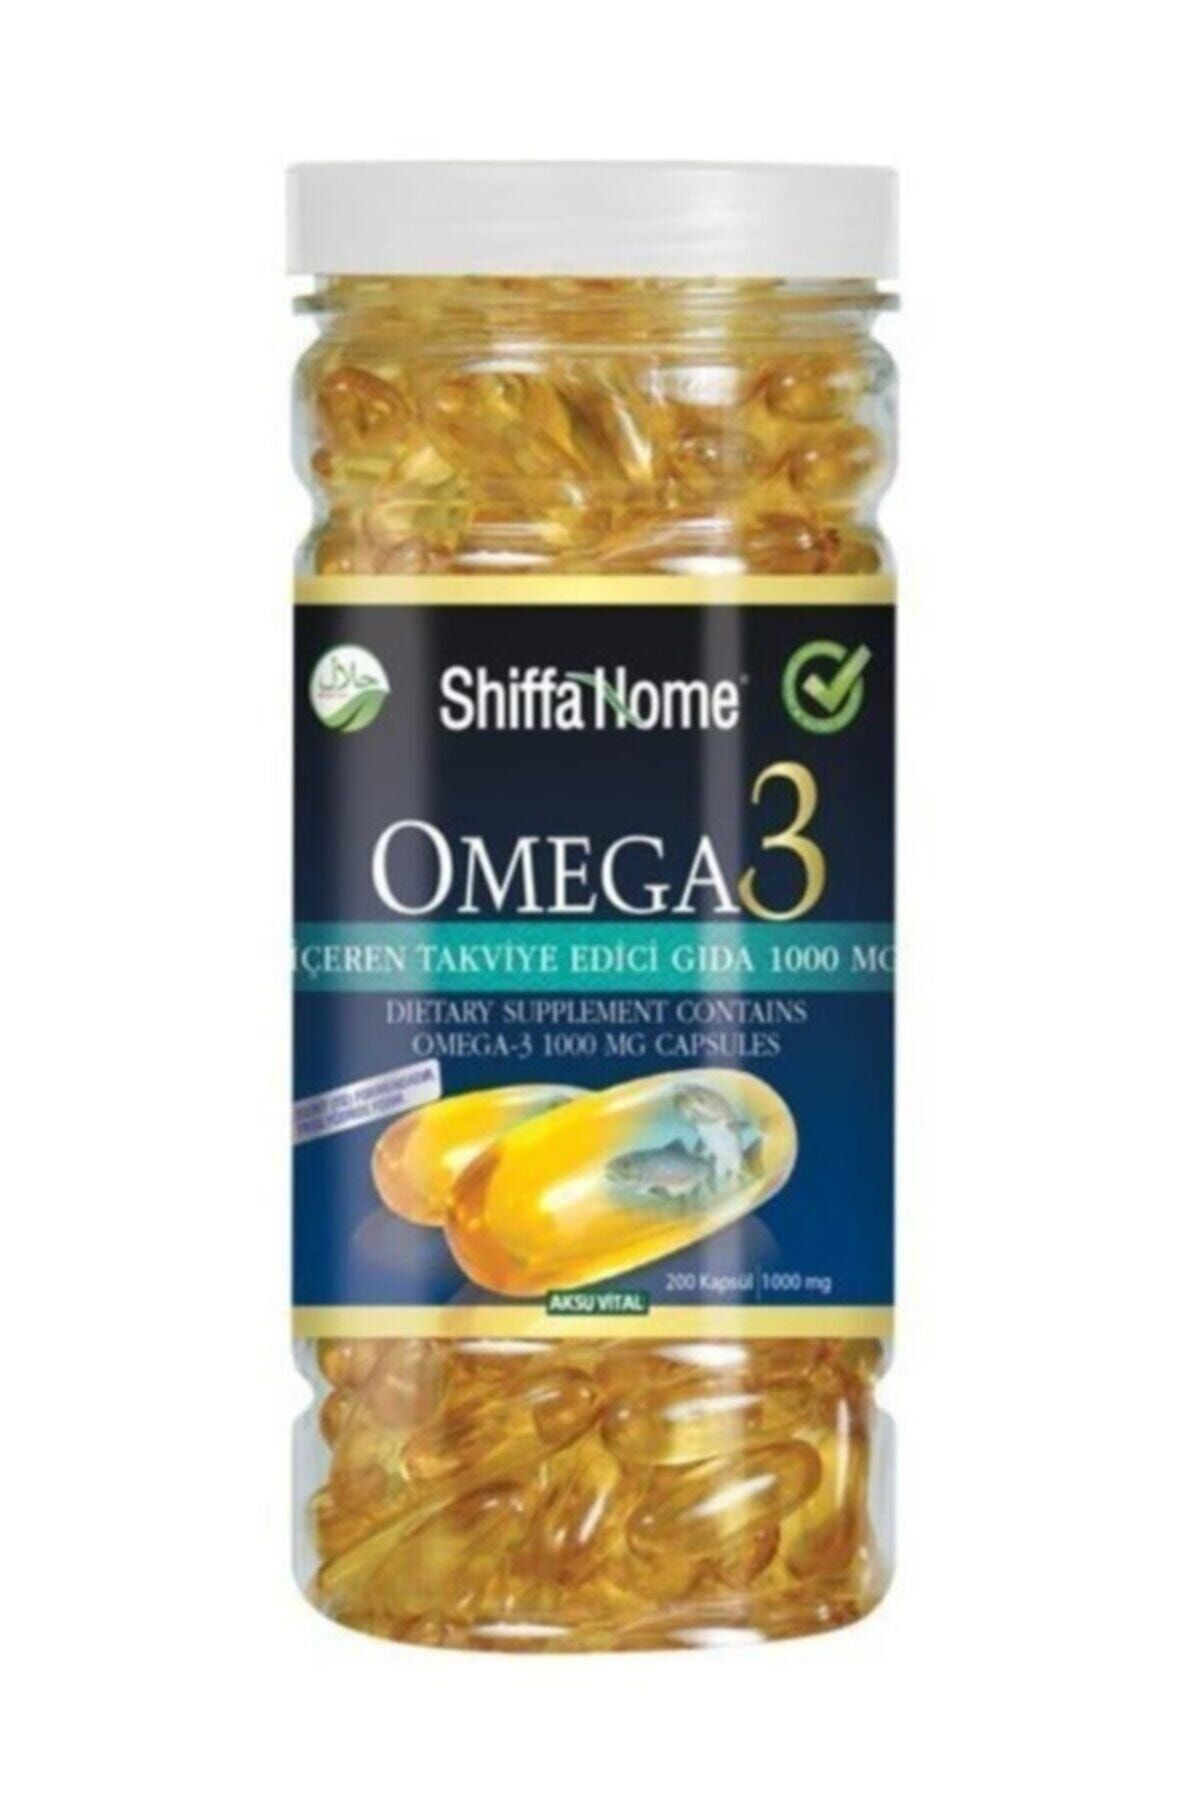 Shiffa Home Omega-3 1000mg 200 Softjel